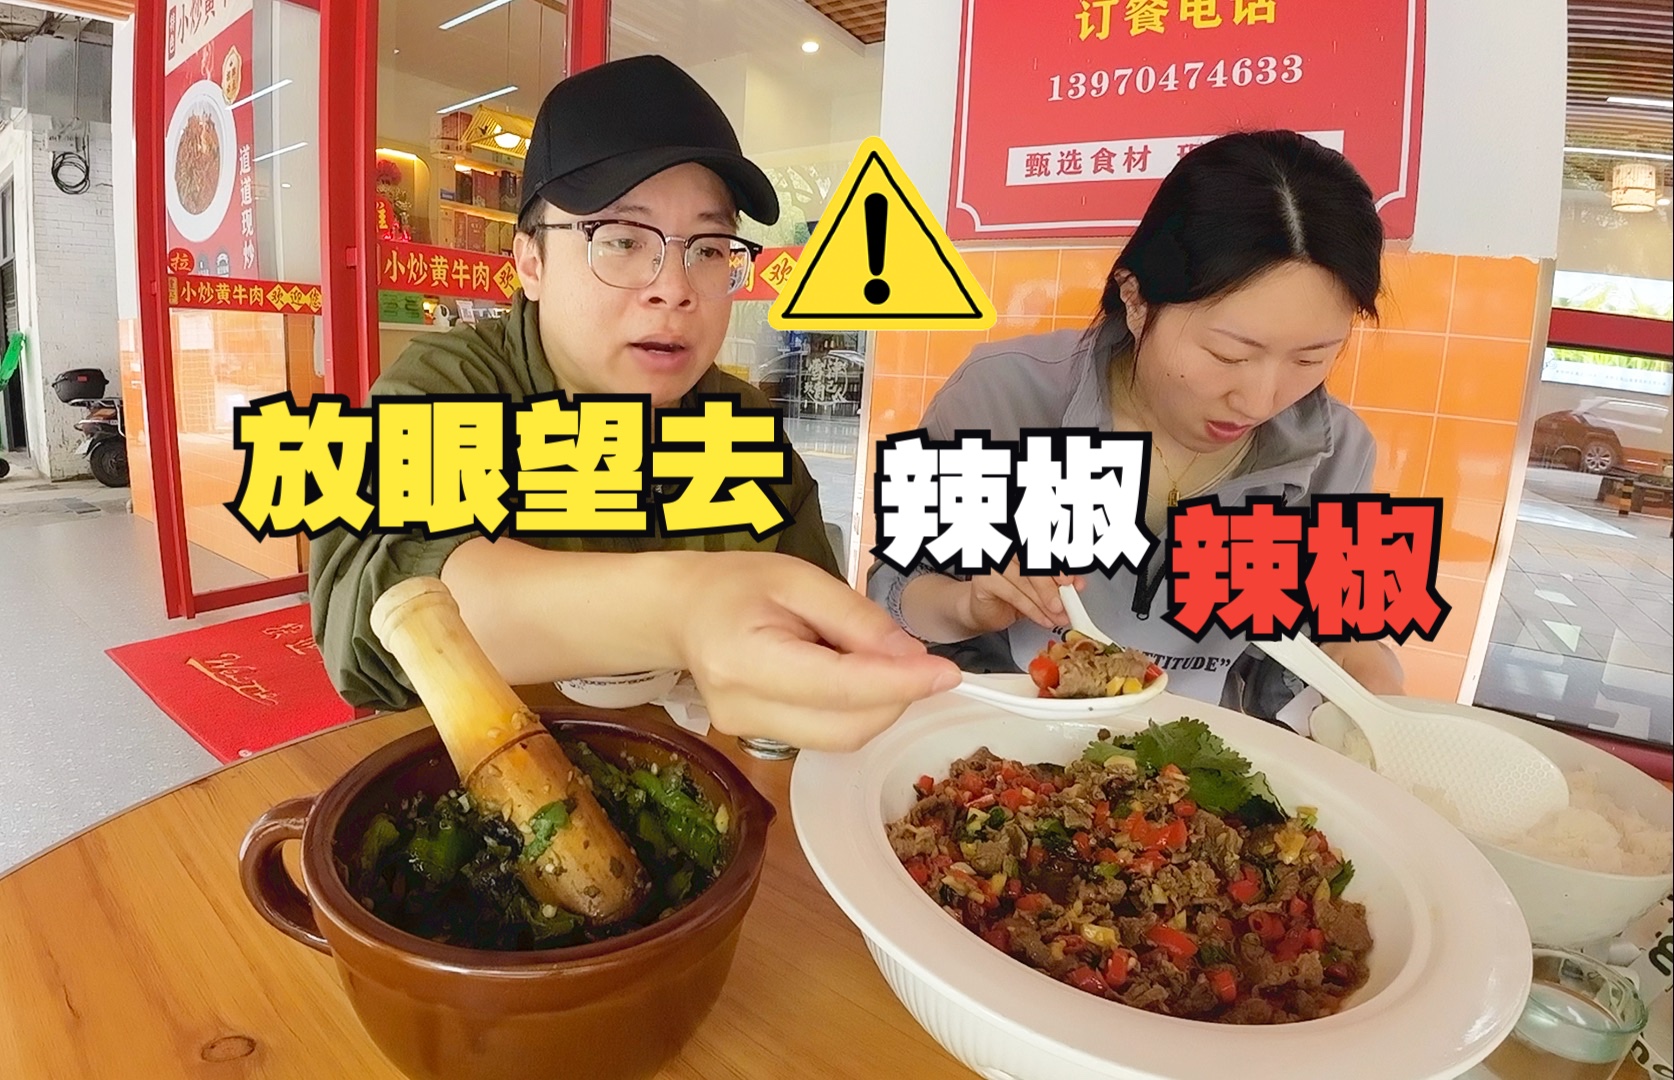 【赣饭】江西的炒菜师傅到底有多喜欢辣椒?我一个江西人竟然被一道小炒黄牛肉辣破防了!